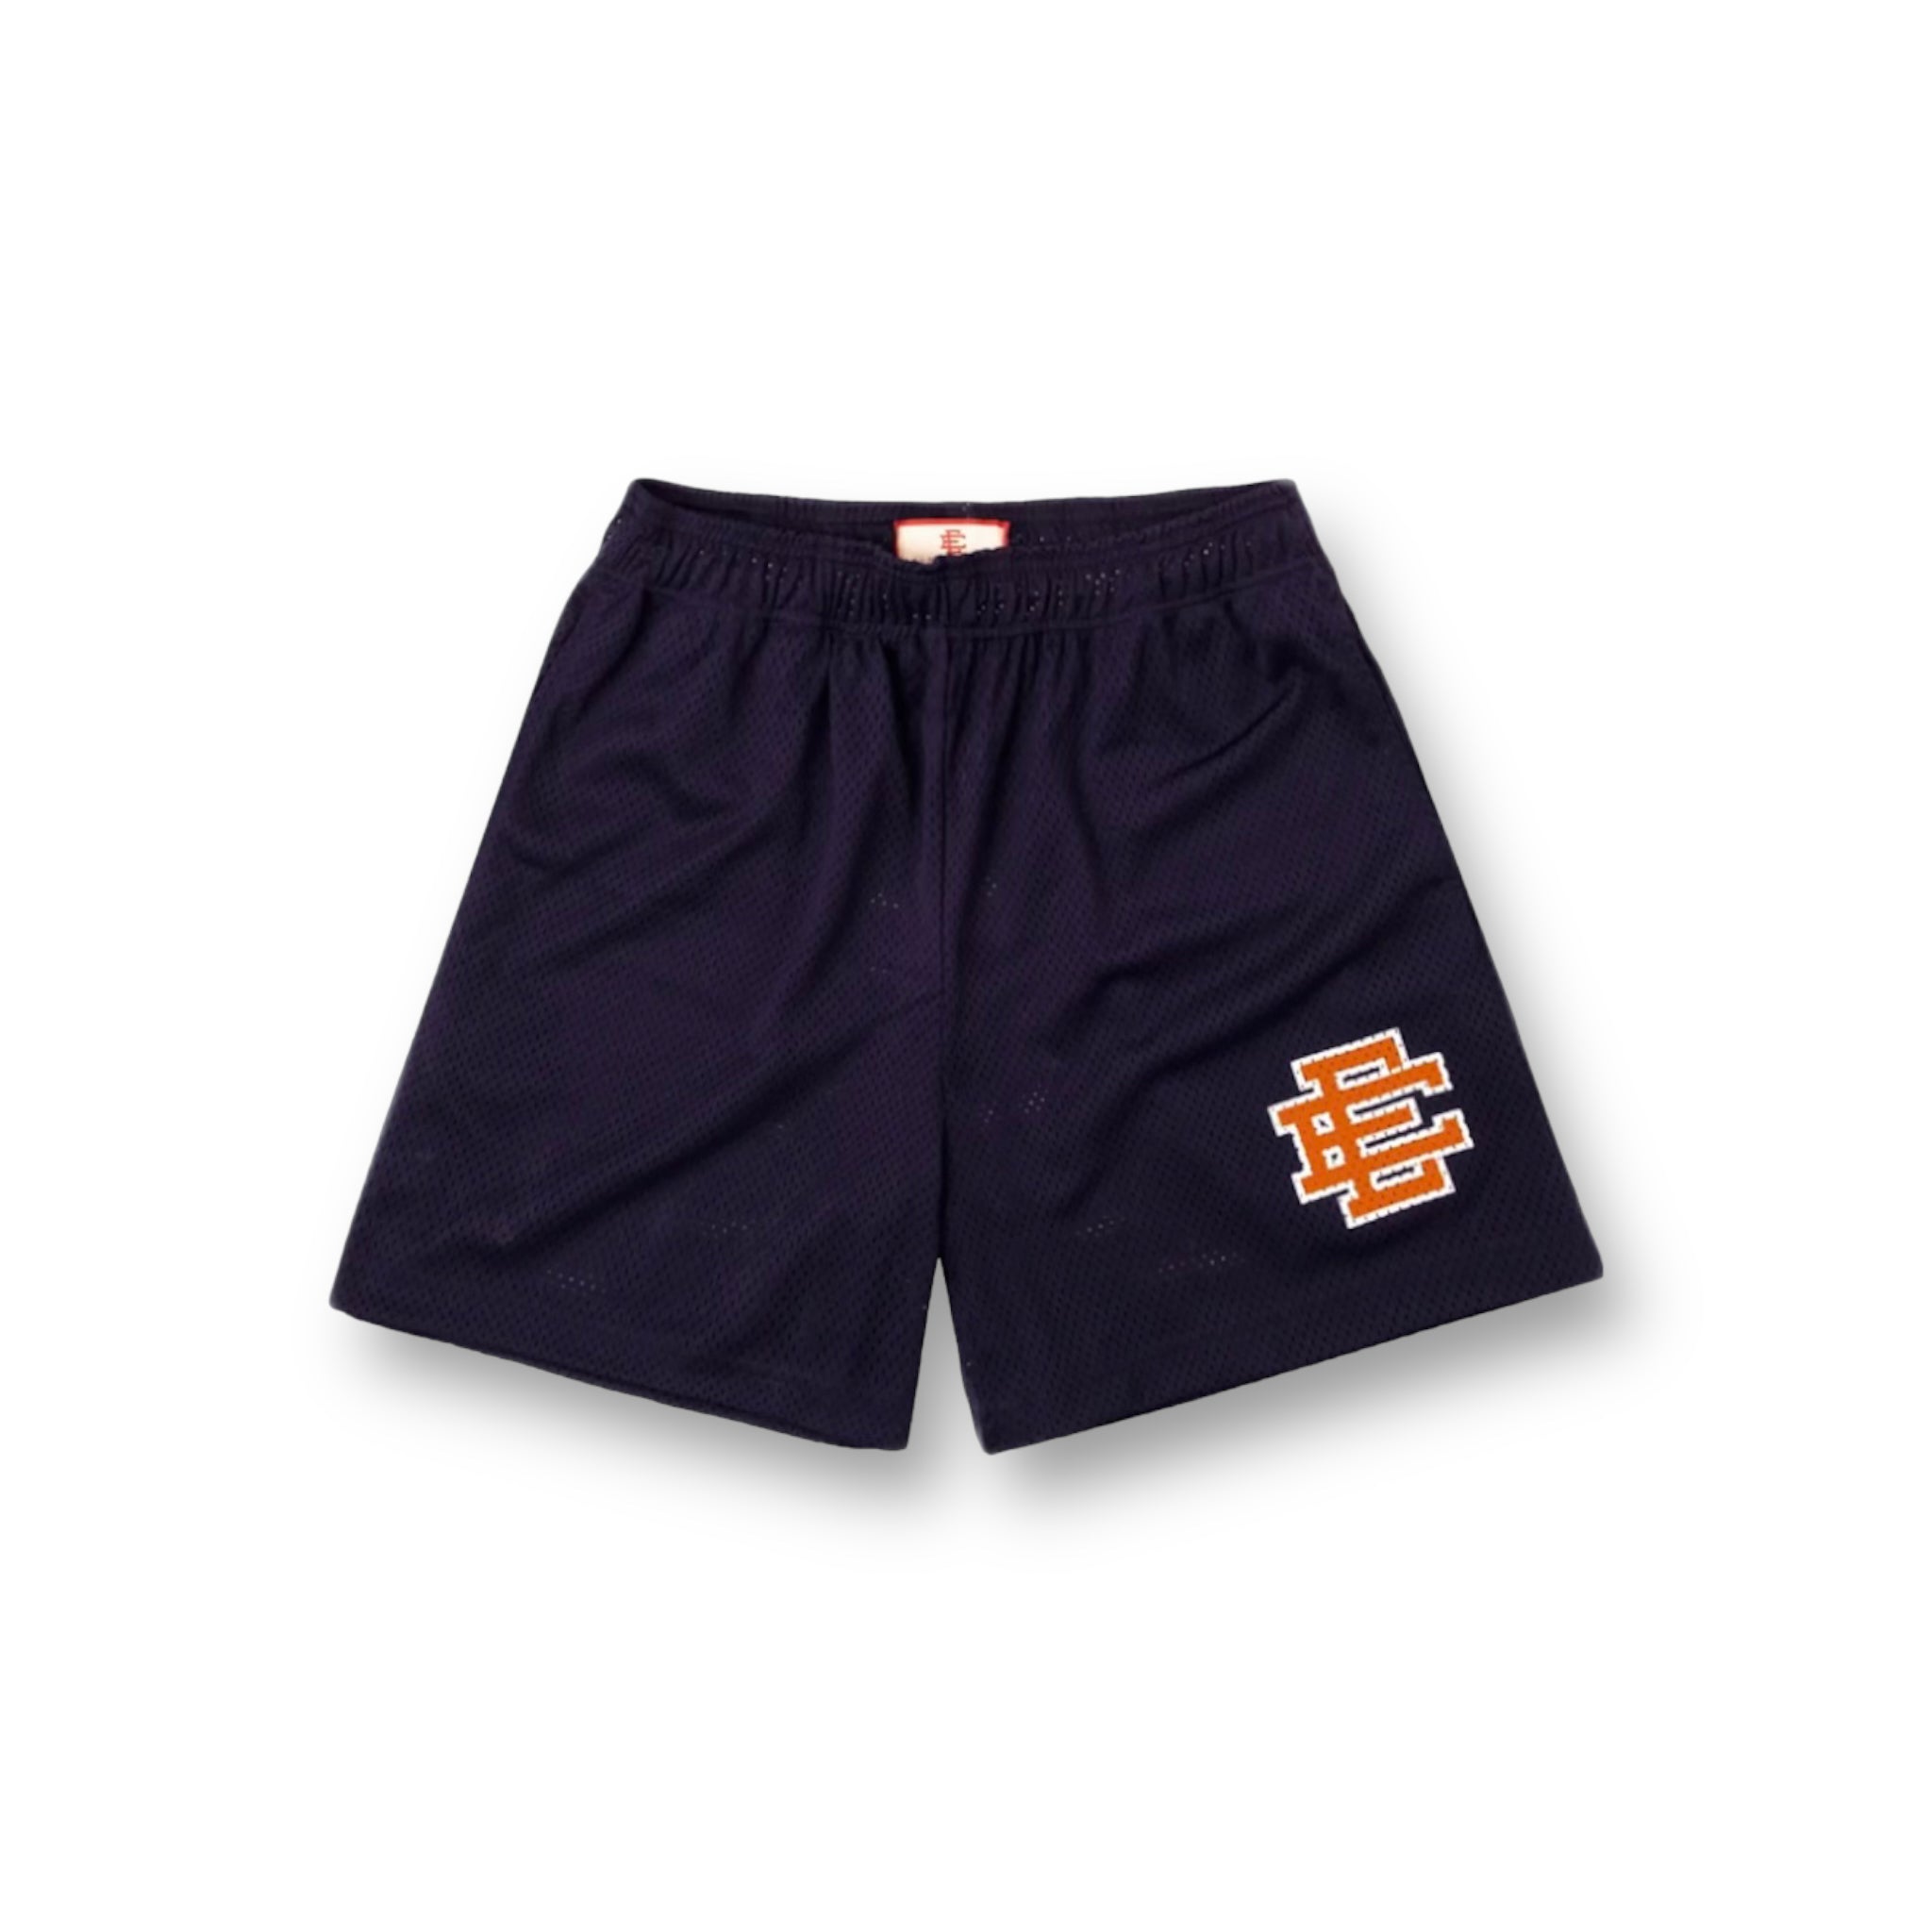 Eric Emanuel Navy Blue/Orange Shorts